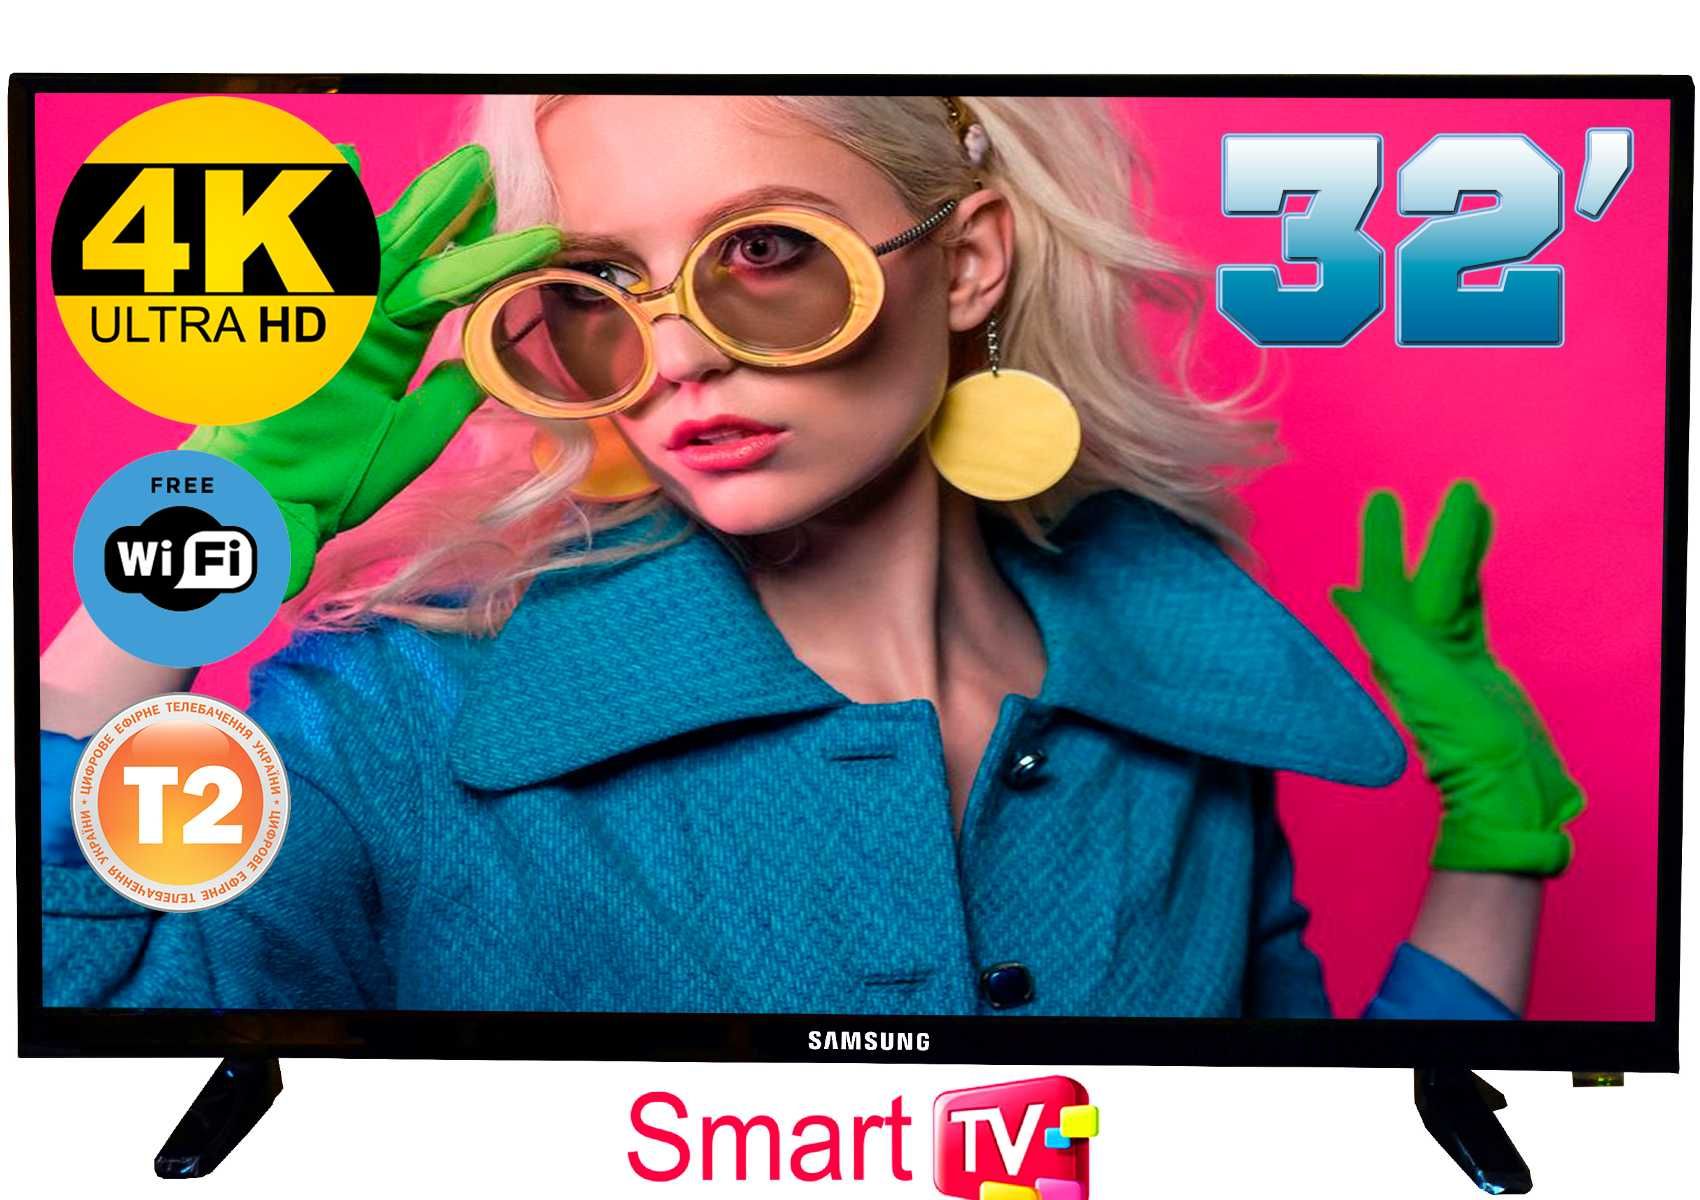 Телевизоры Samsung 32'' 4K UHDTV Smart TV,T2,IPTV Самсунг смарт32